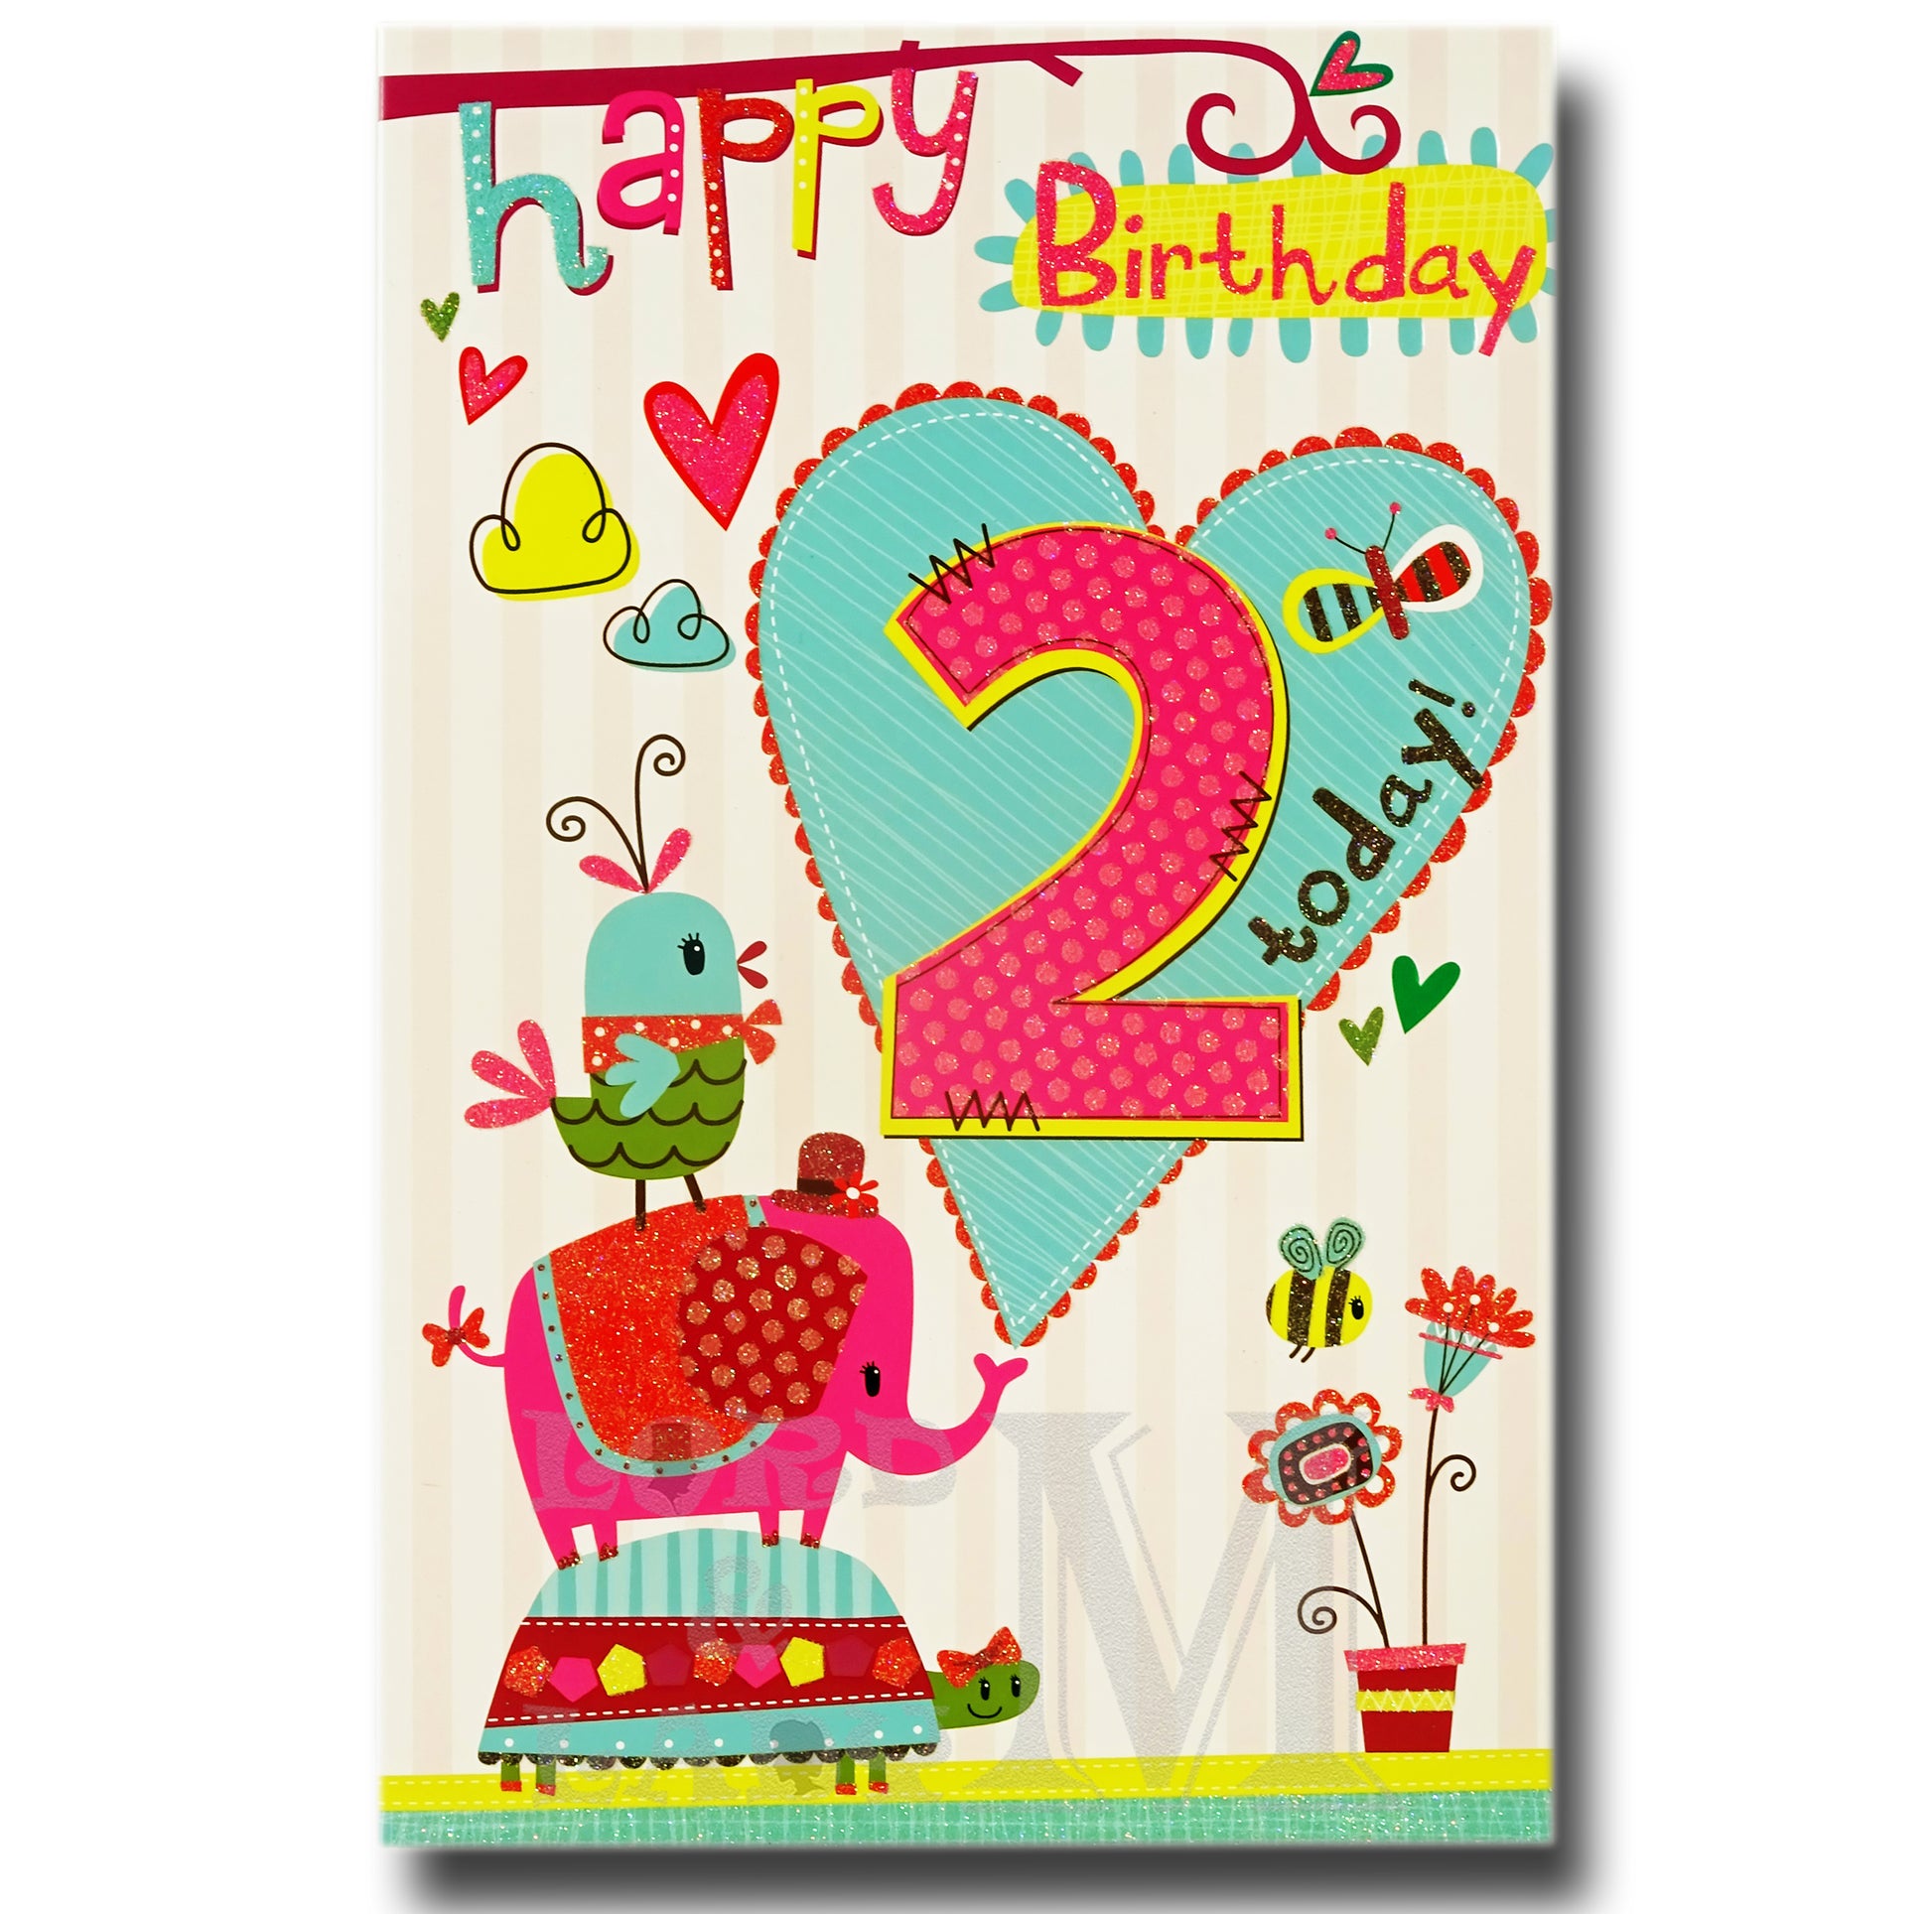 27cm - Happy Birthday 2 Today! - Lge Let - E